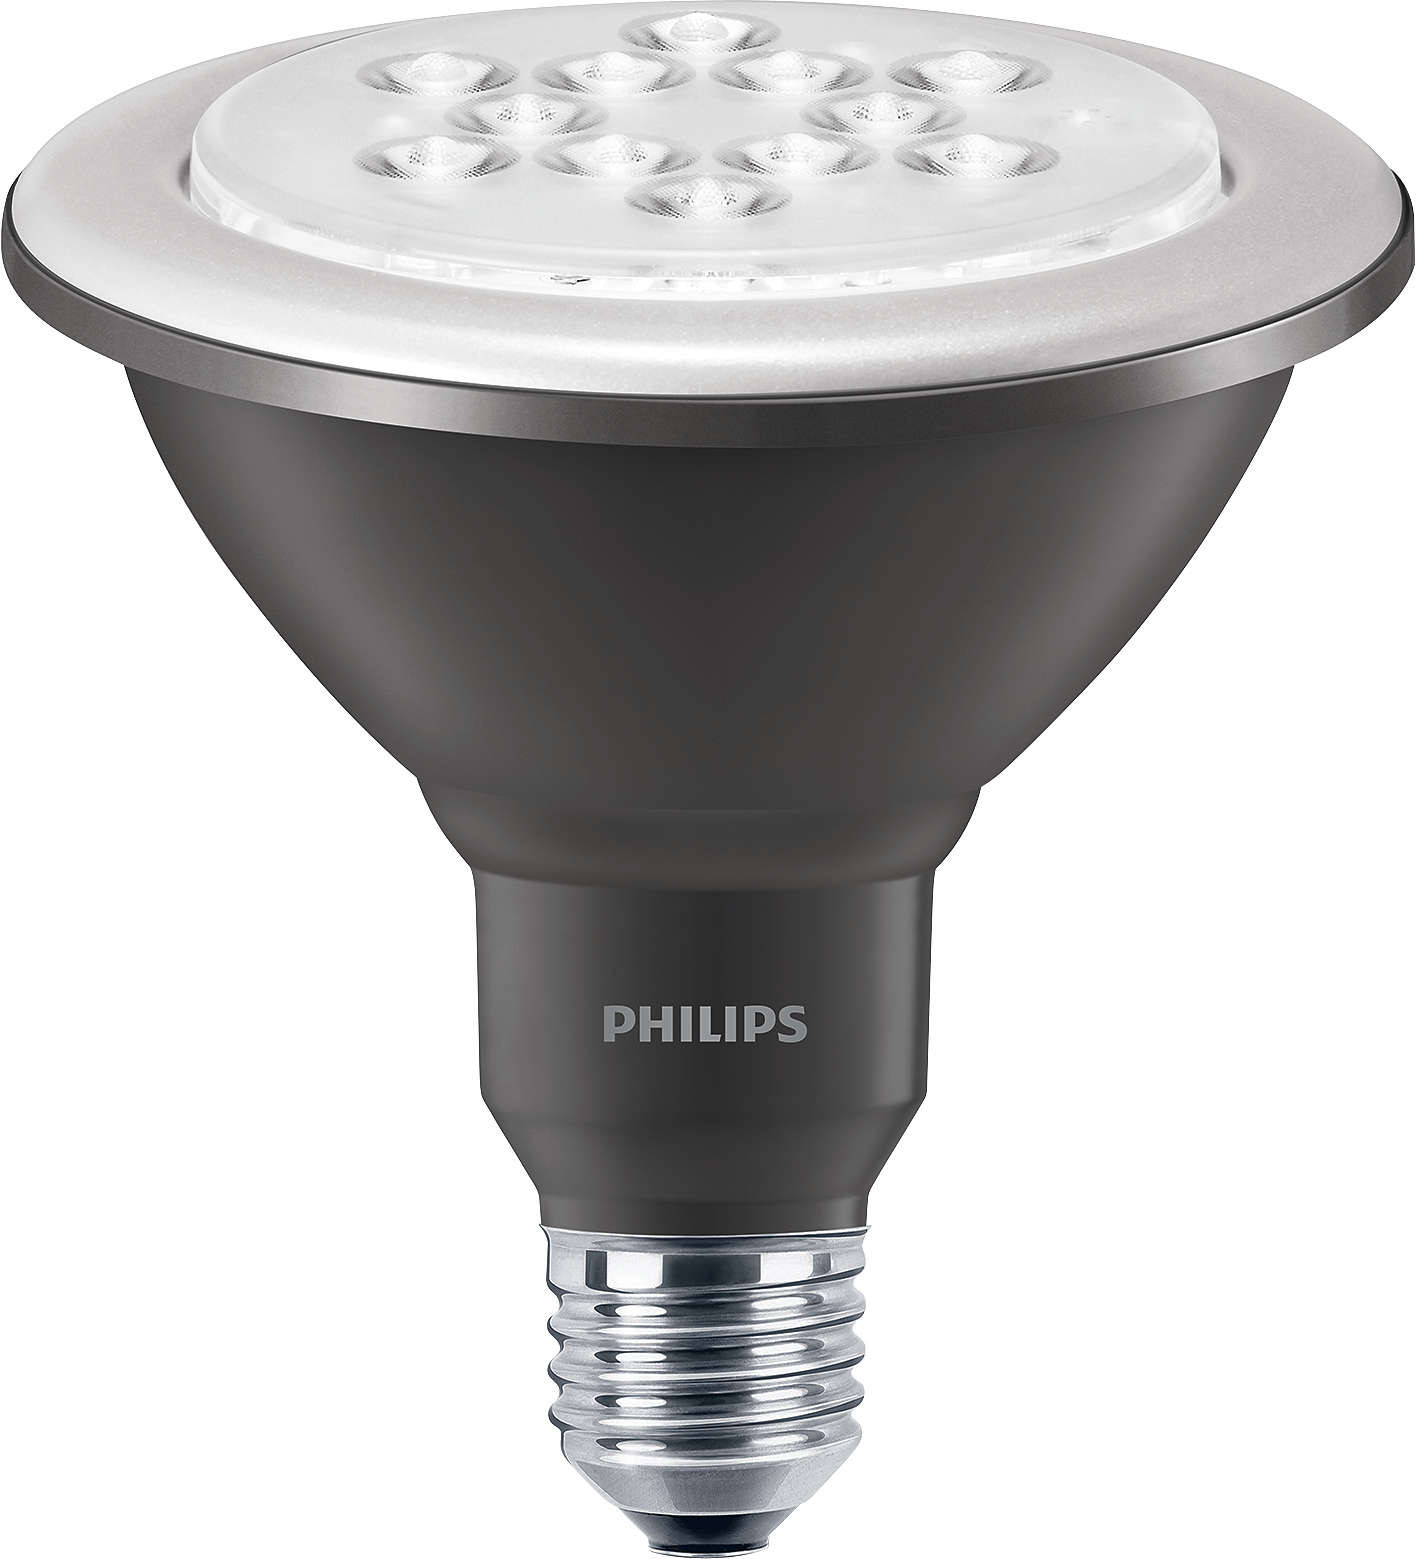 Philips MASTER LEDspot D 13-100W 827 PAR38 25D